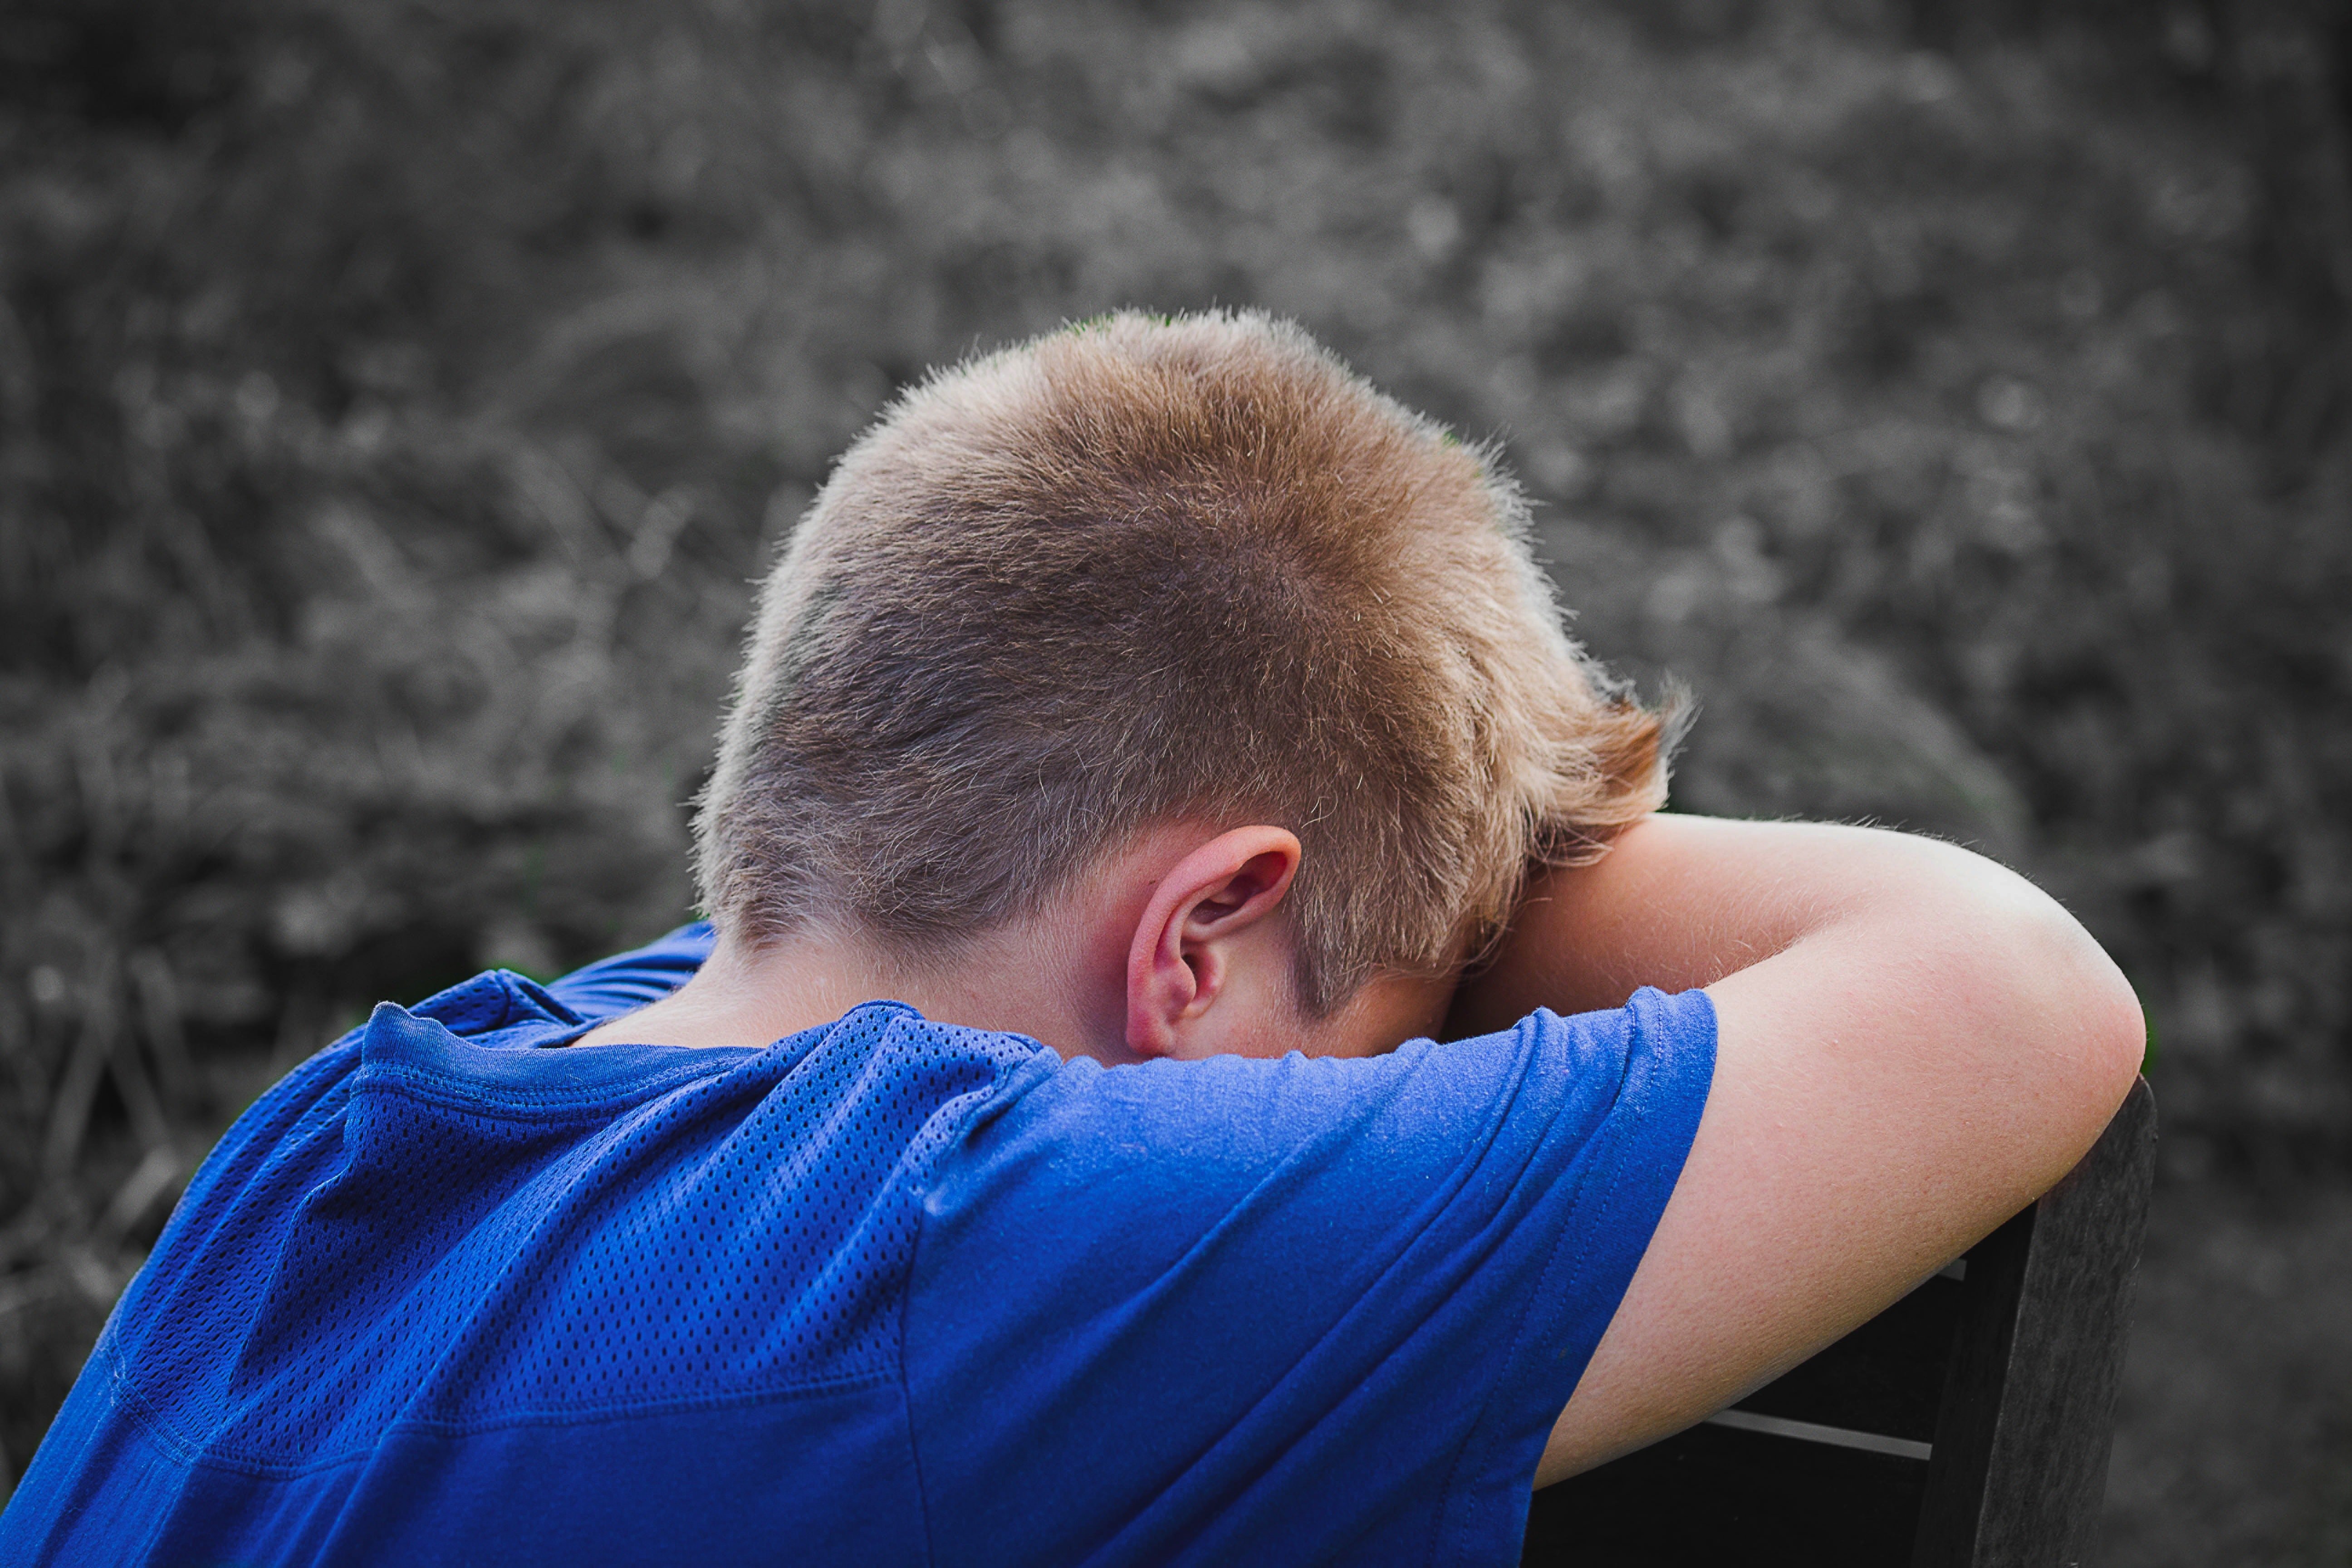 A sad boy puts down his head. | Source: Pixabay